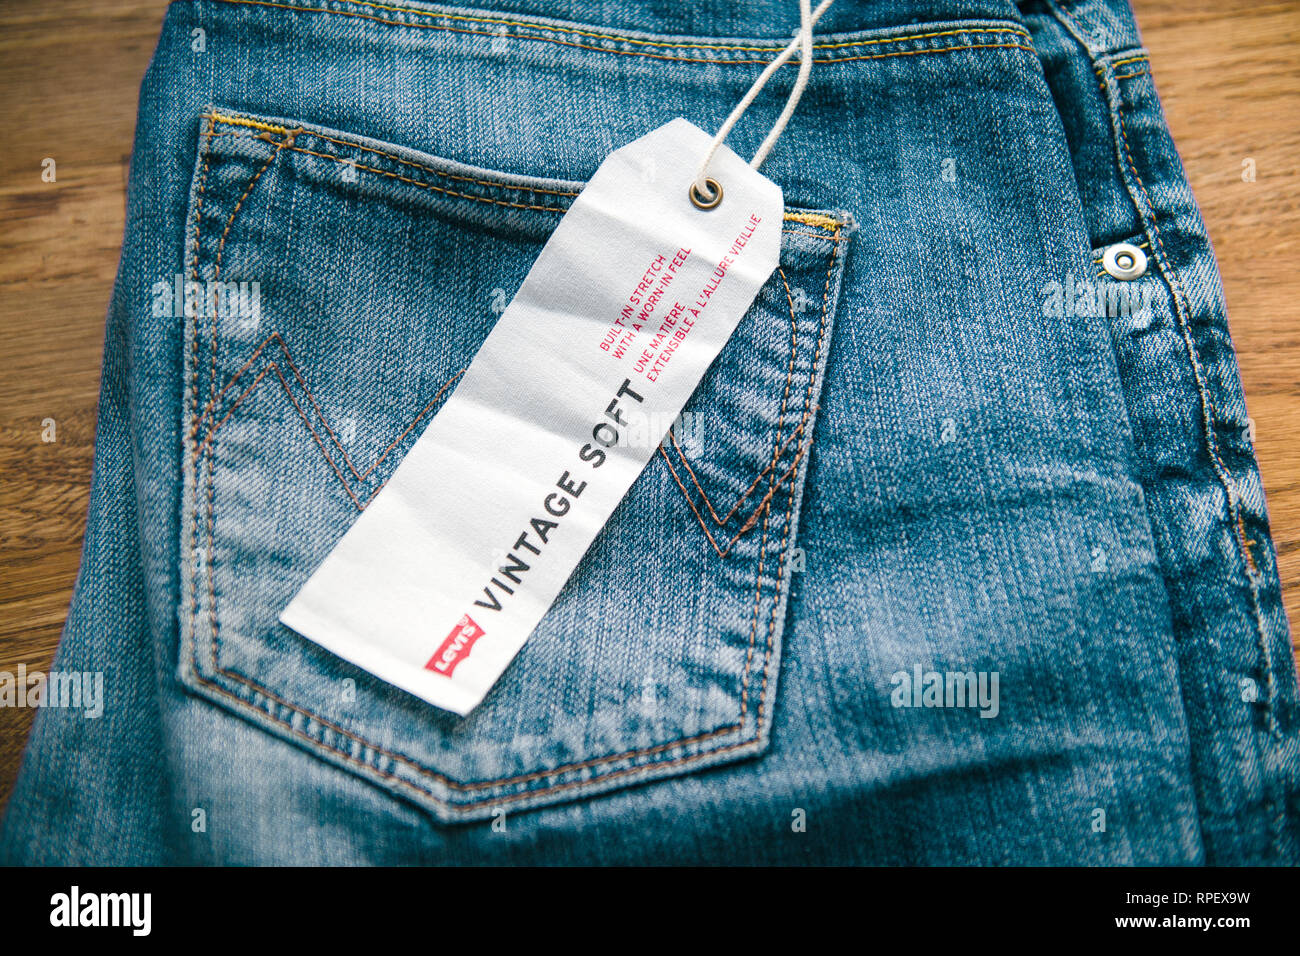 levis jeans price range